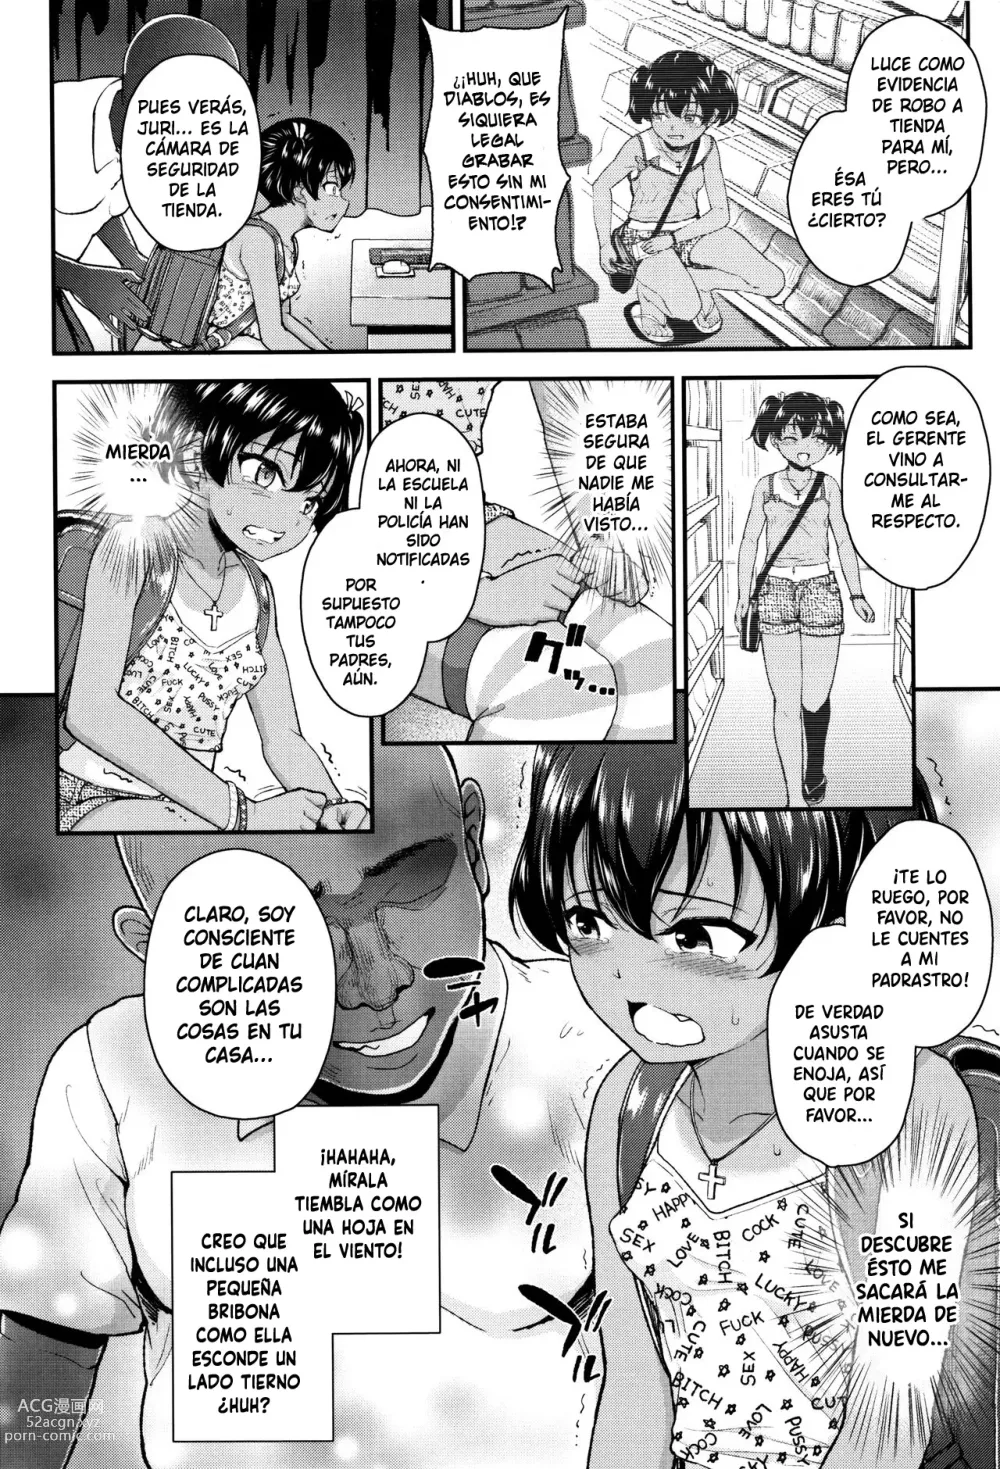 Page 3 of manga Tsungire + Tsungire After